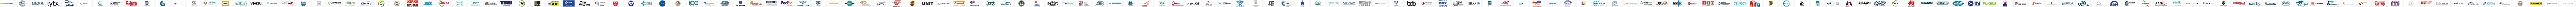 IRU Member logos